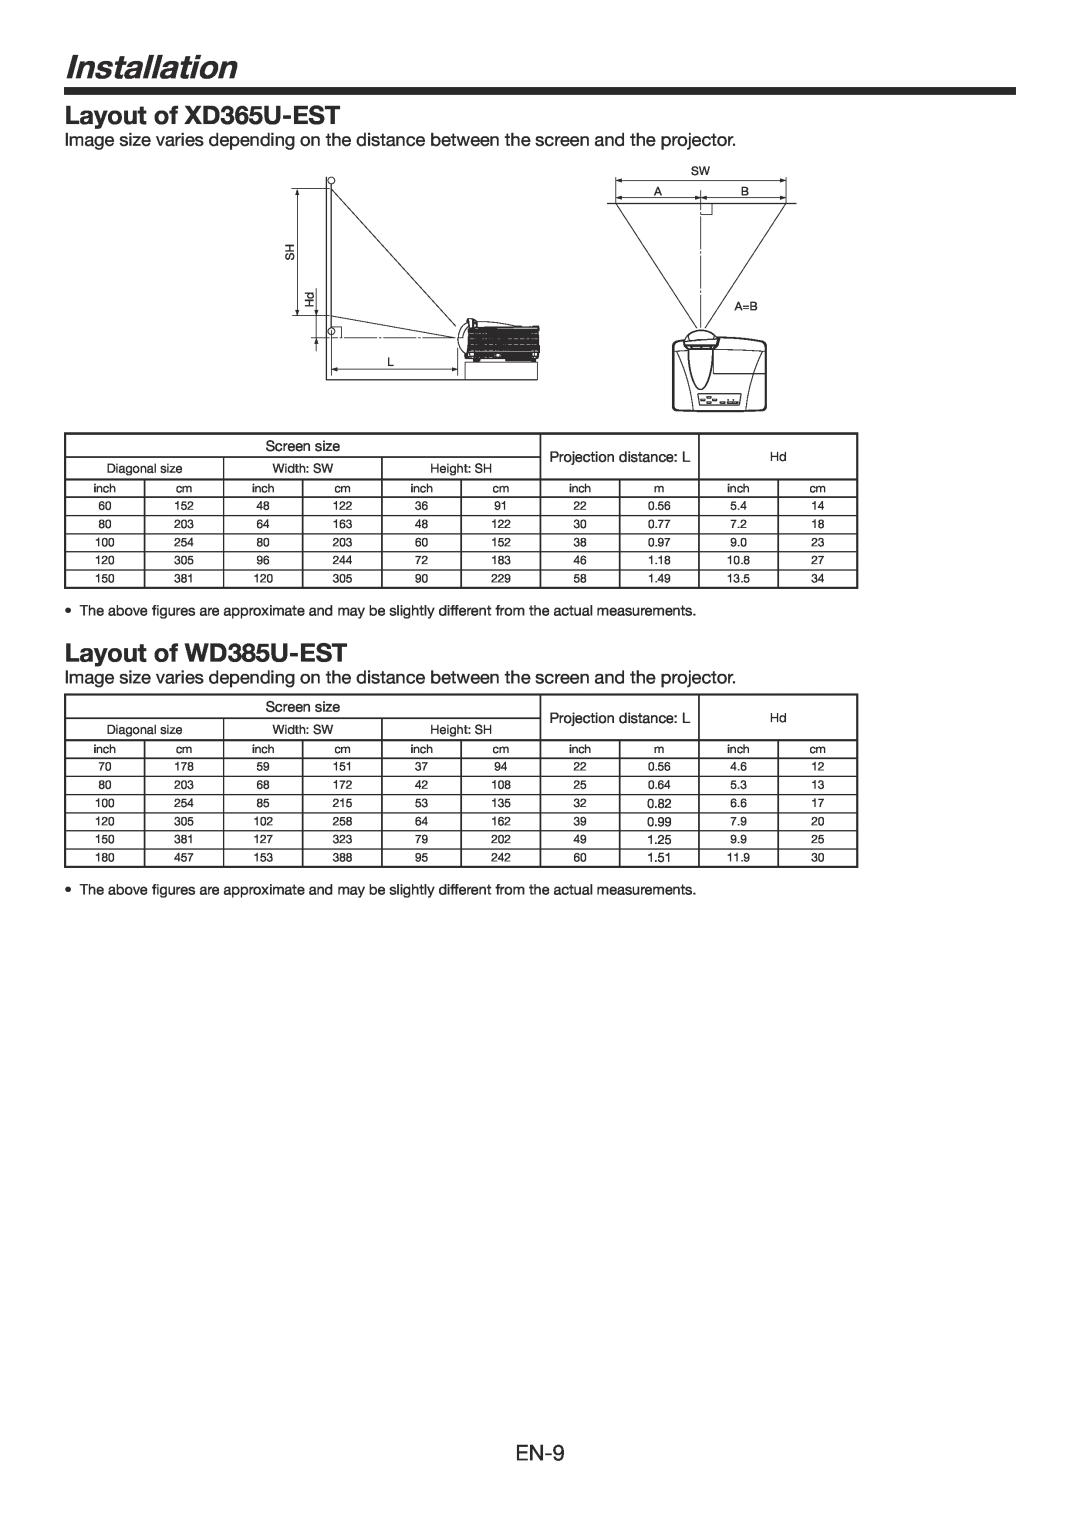 Mitsubishi Electronics user manual Installation, Layout of XD365U-EST, Layout of WD385U-EST 